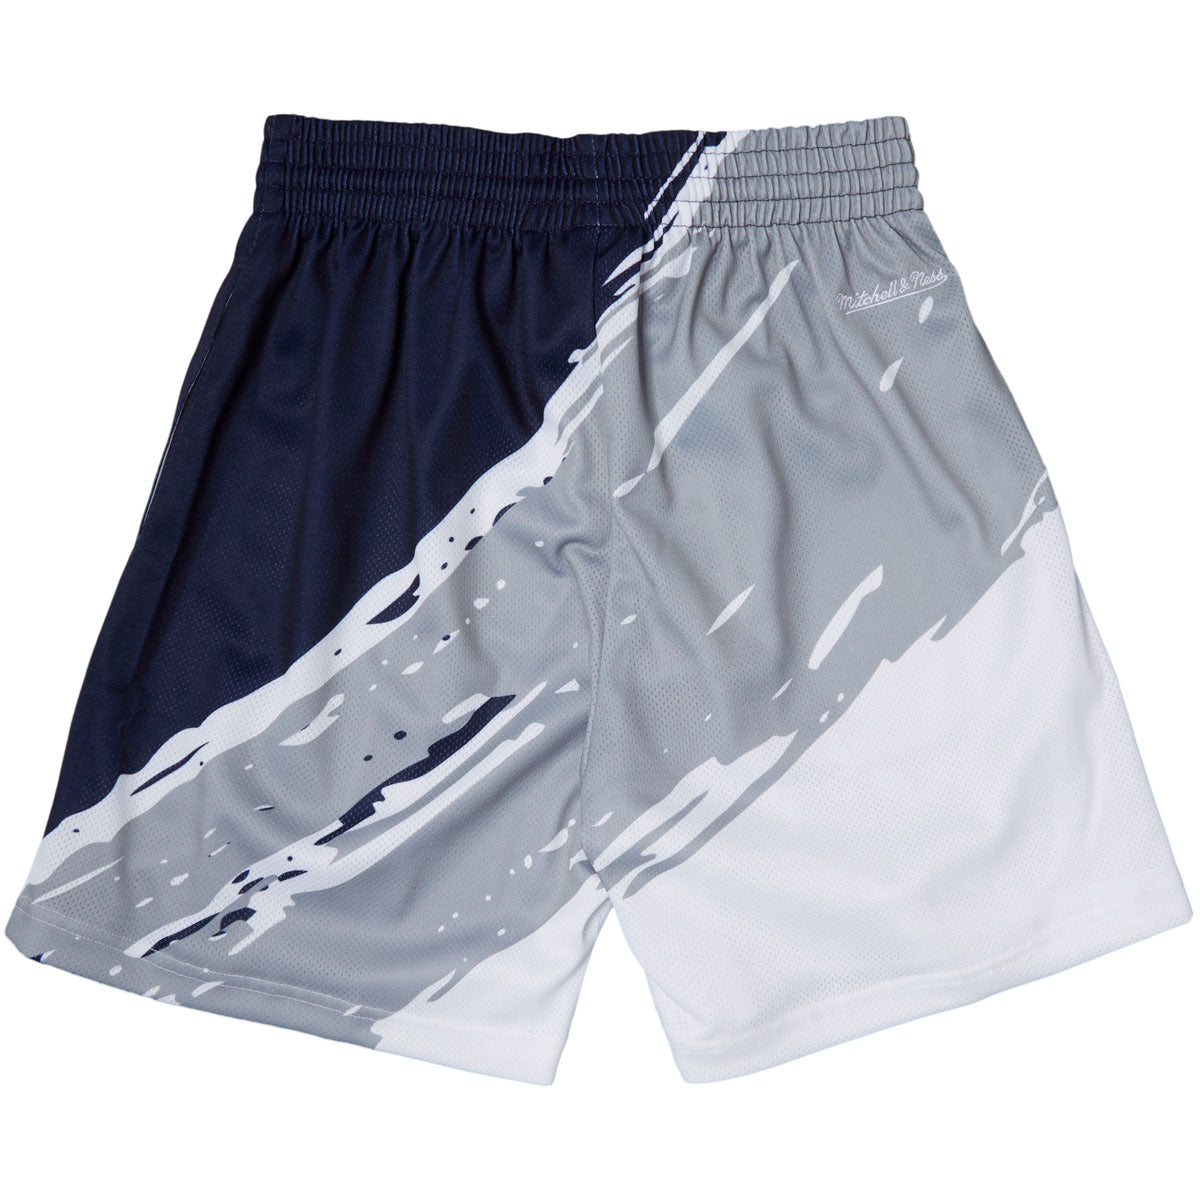 Mitchell & Ness x MLB Paint Brush Sublimated Mesh Shorts - White image 2